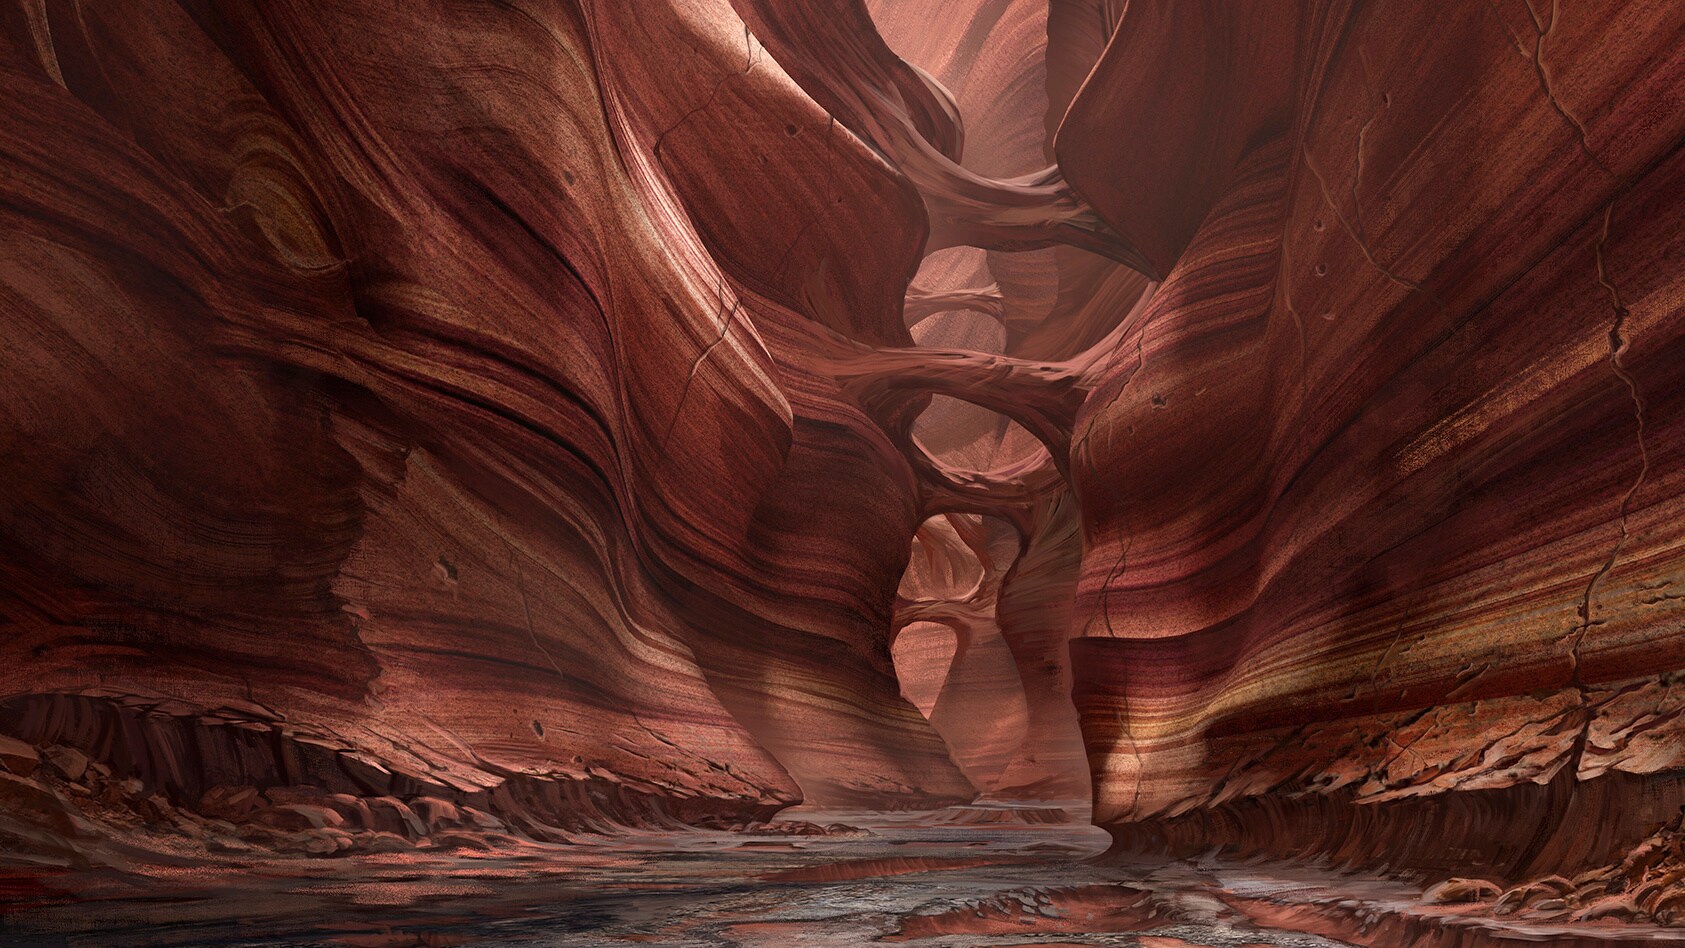 Ipsidon canyon concept art by Clint Felker